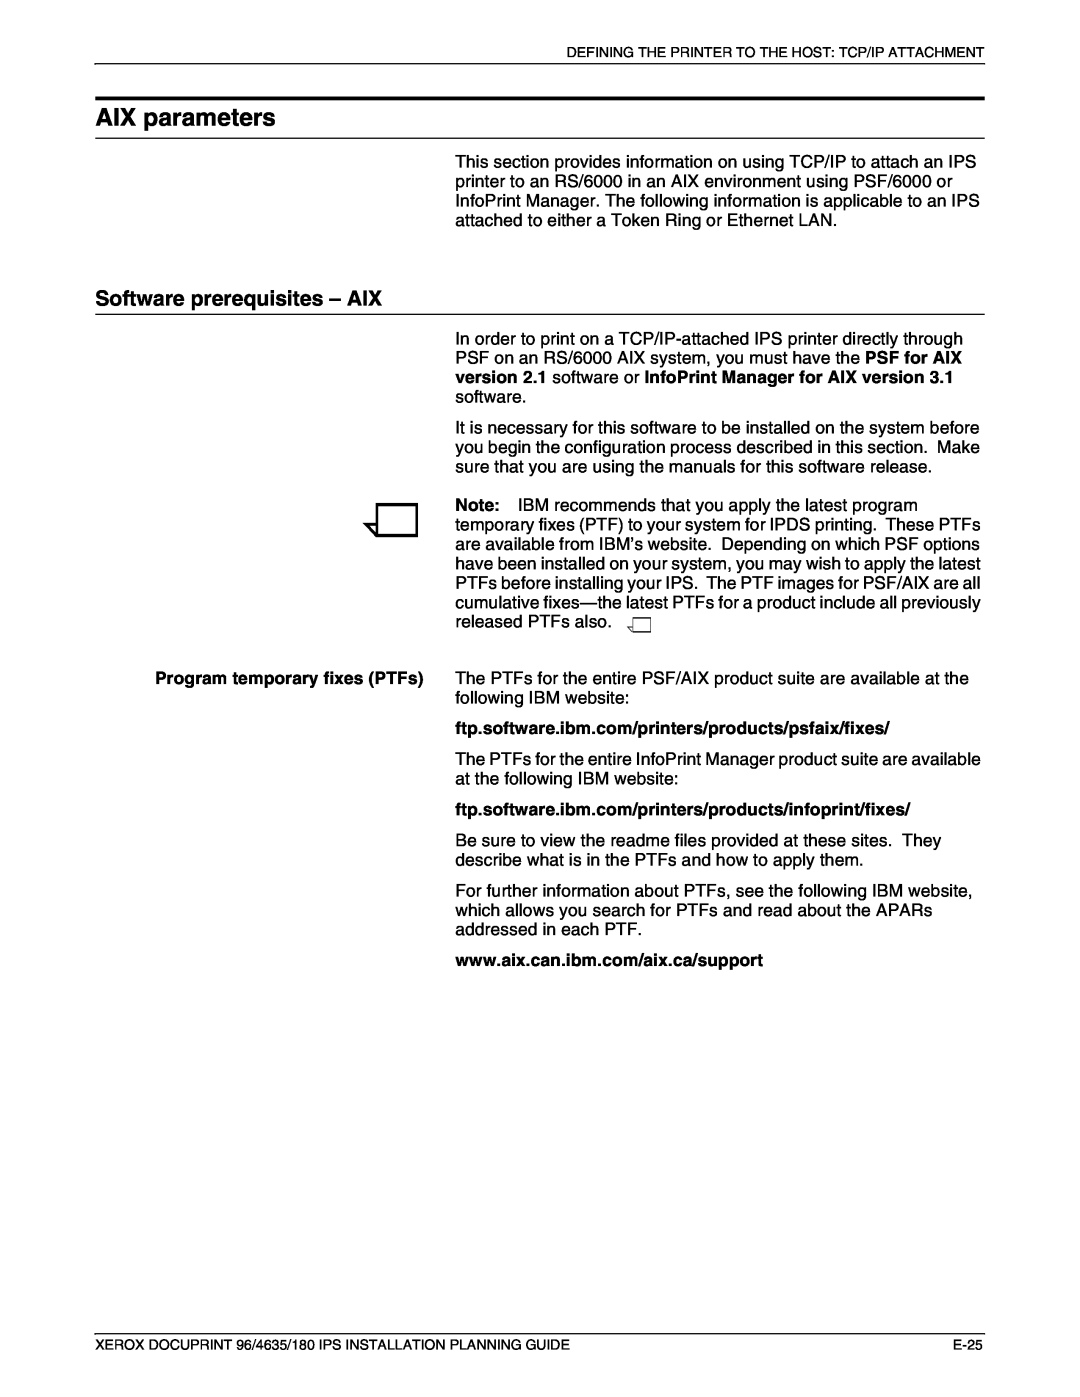 Xerox 180 IPS manual AIX parameters, Software prerequisites – AIX 